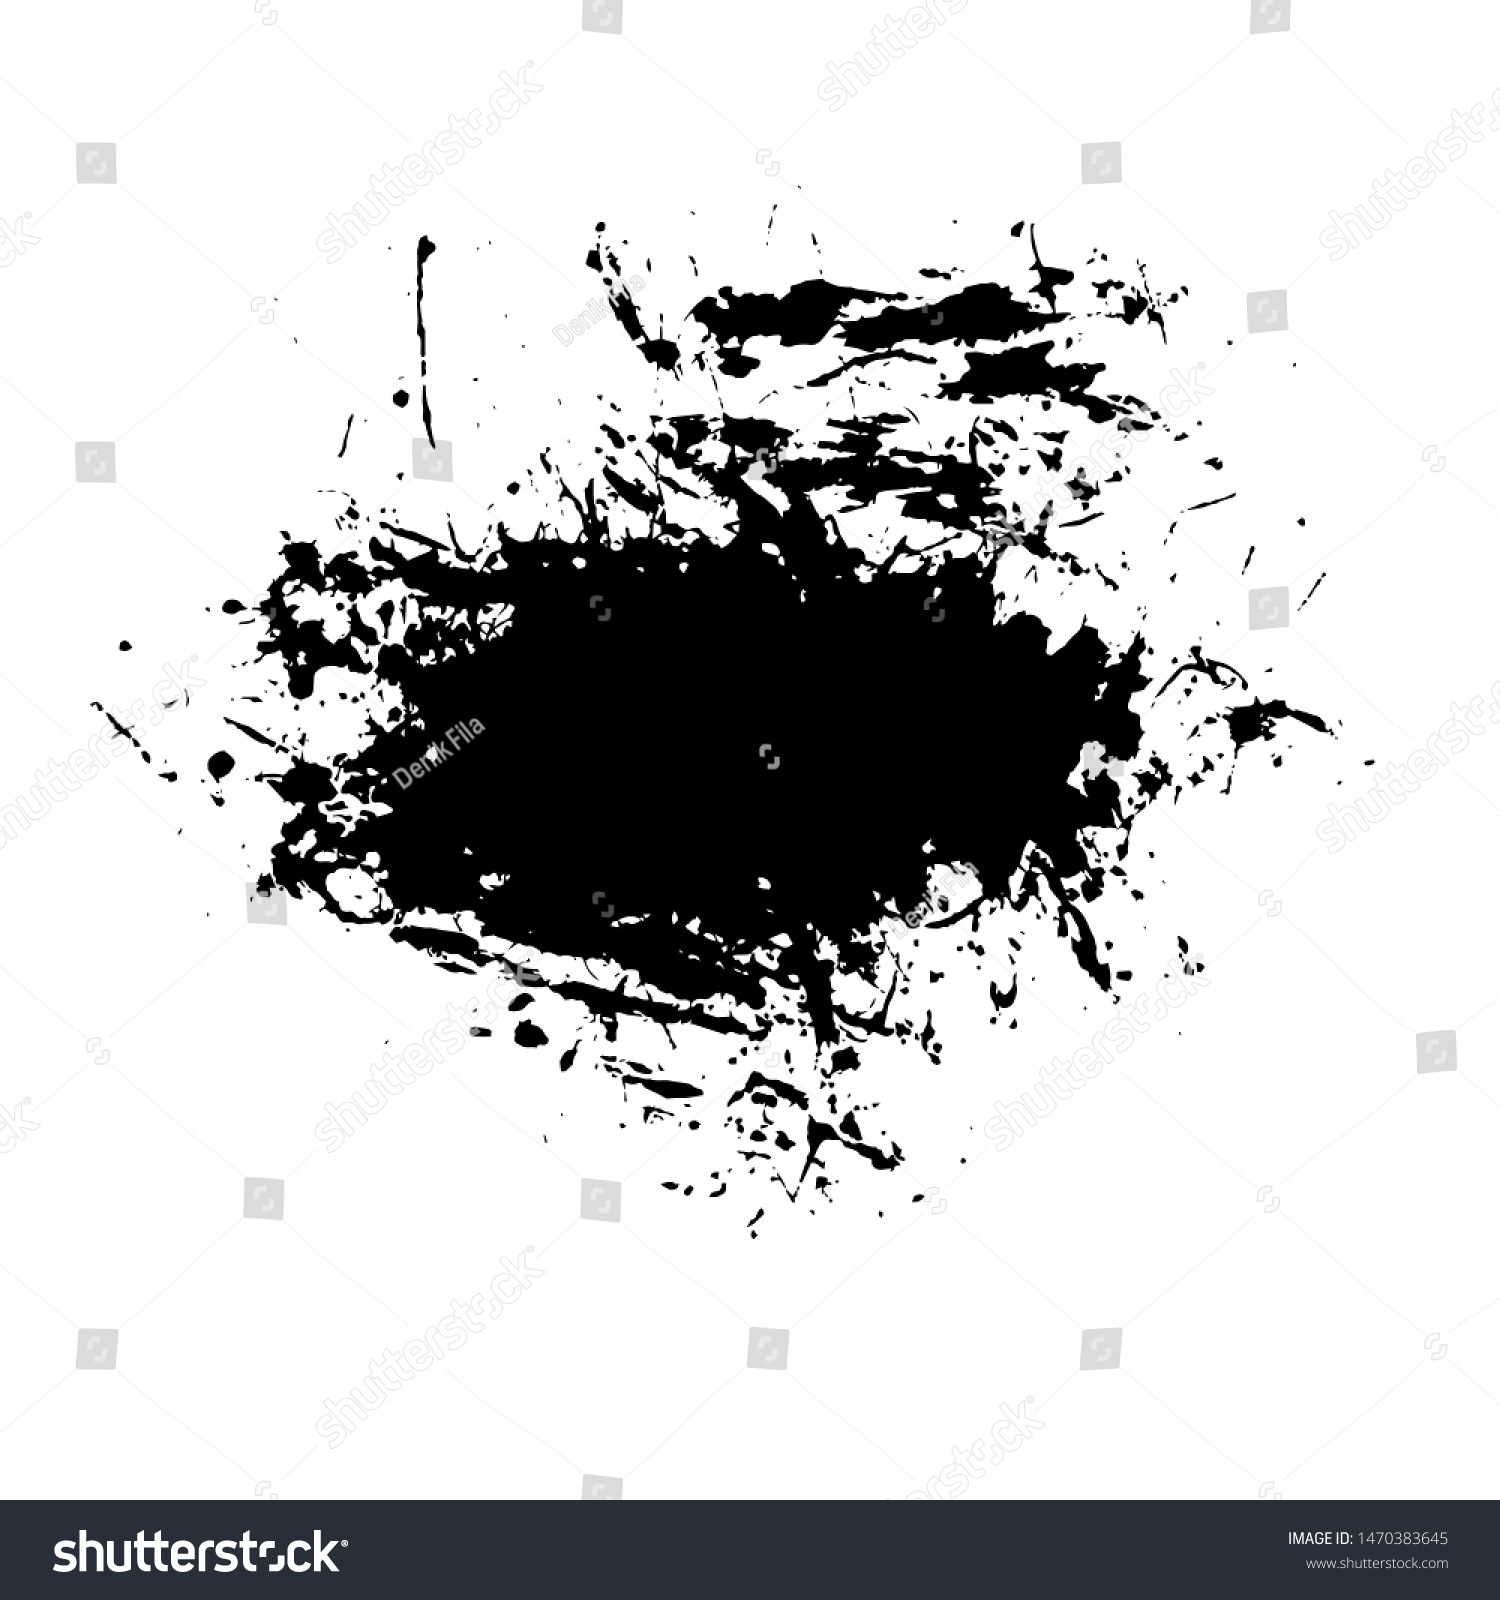 SVG of Grunge Ink Paintbrush Splattered Vector Art for Cover, Poster, Flyer, Brochure, Banner, Background or Wallpaper Design Download svg